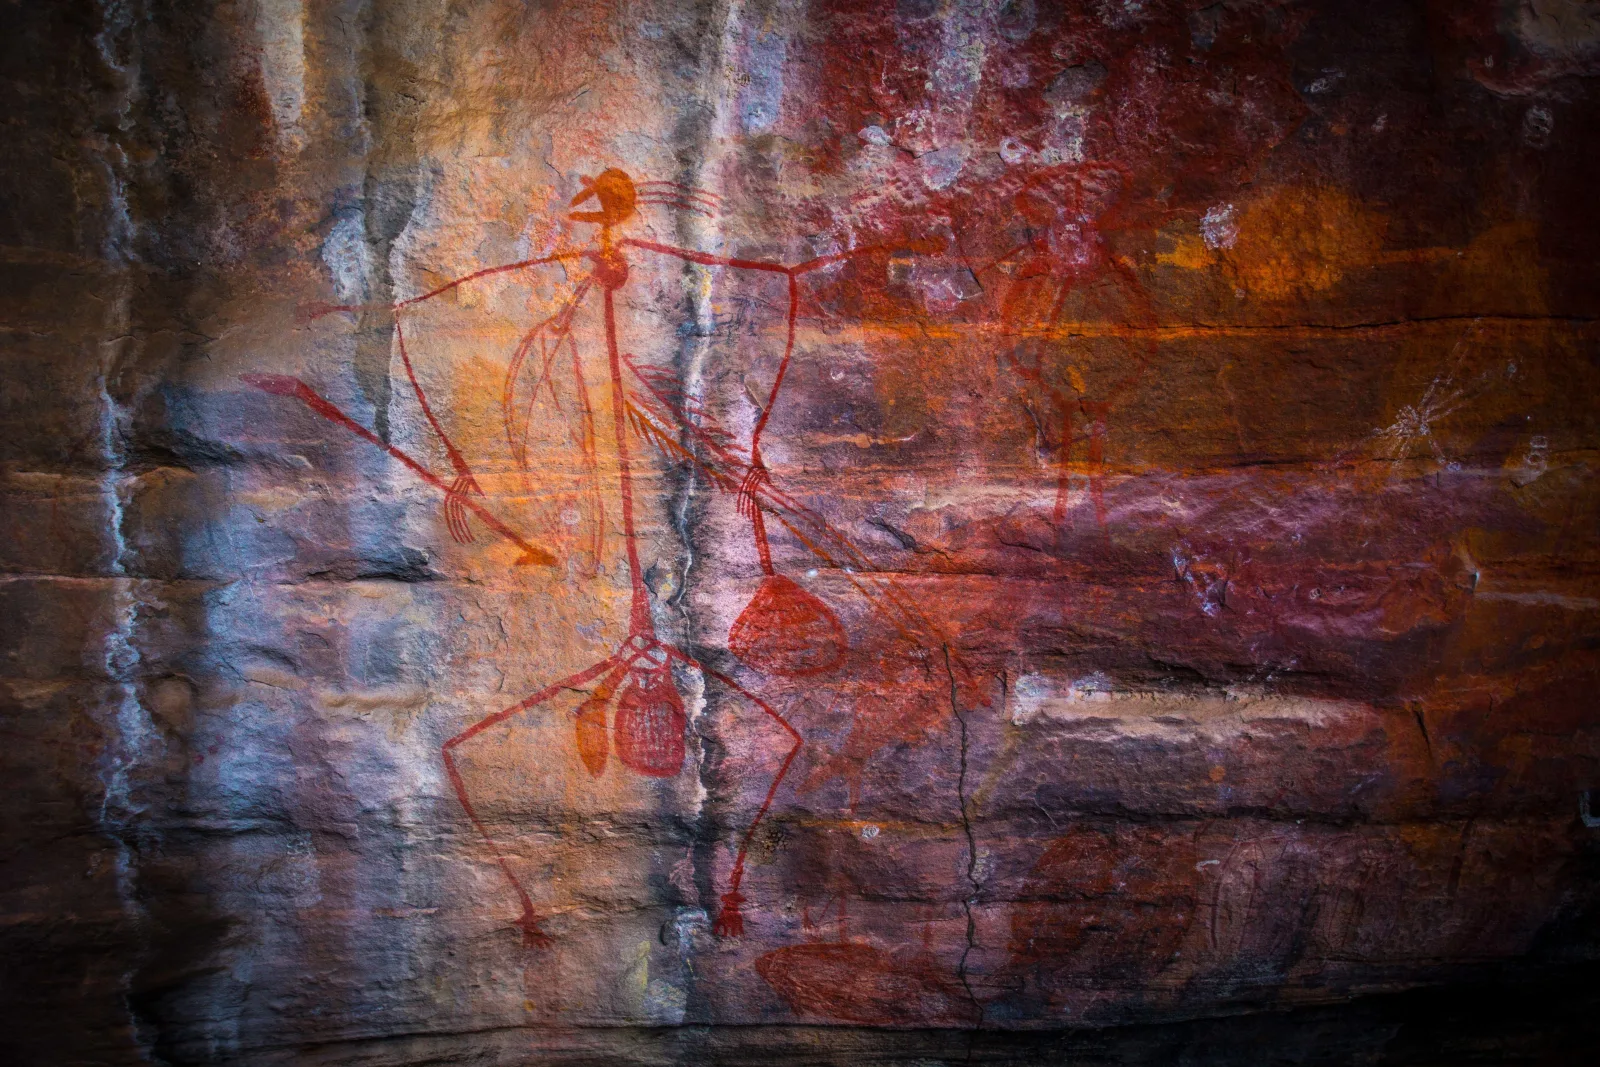 Burrungkuy (Nourlangie) Rock Art Site